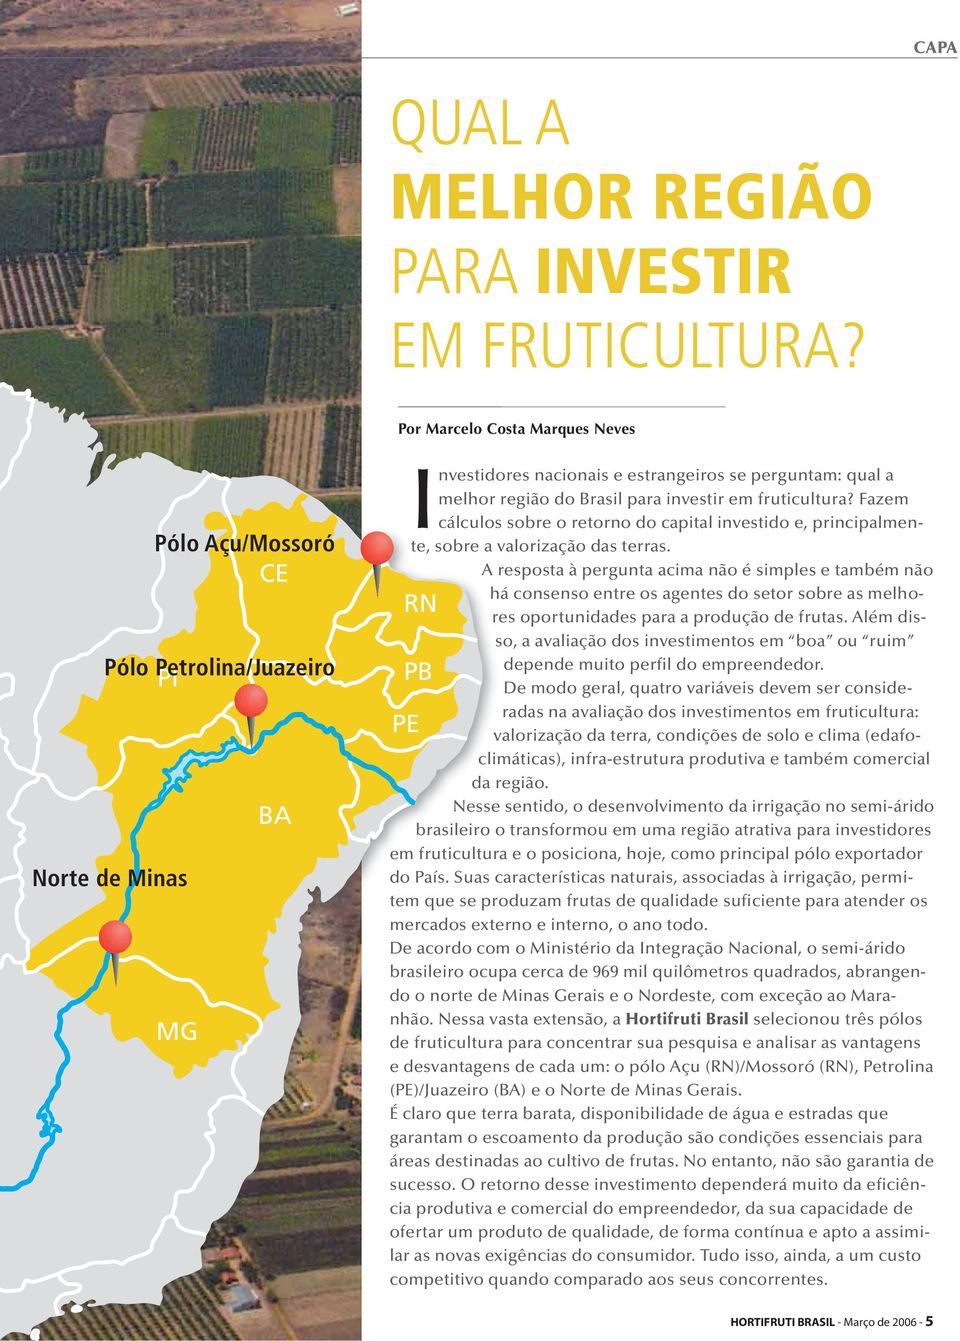 fruticultura? Fazem cálculos sobre o retorno do capital investido e, principalmente, sobre a valorização das terras.